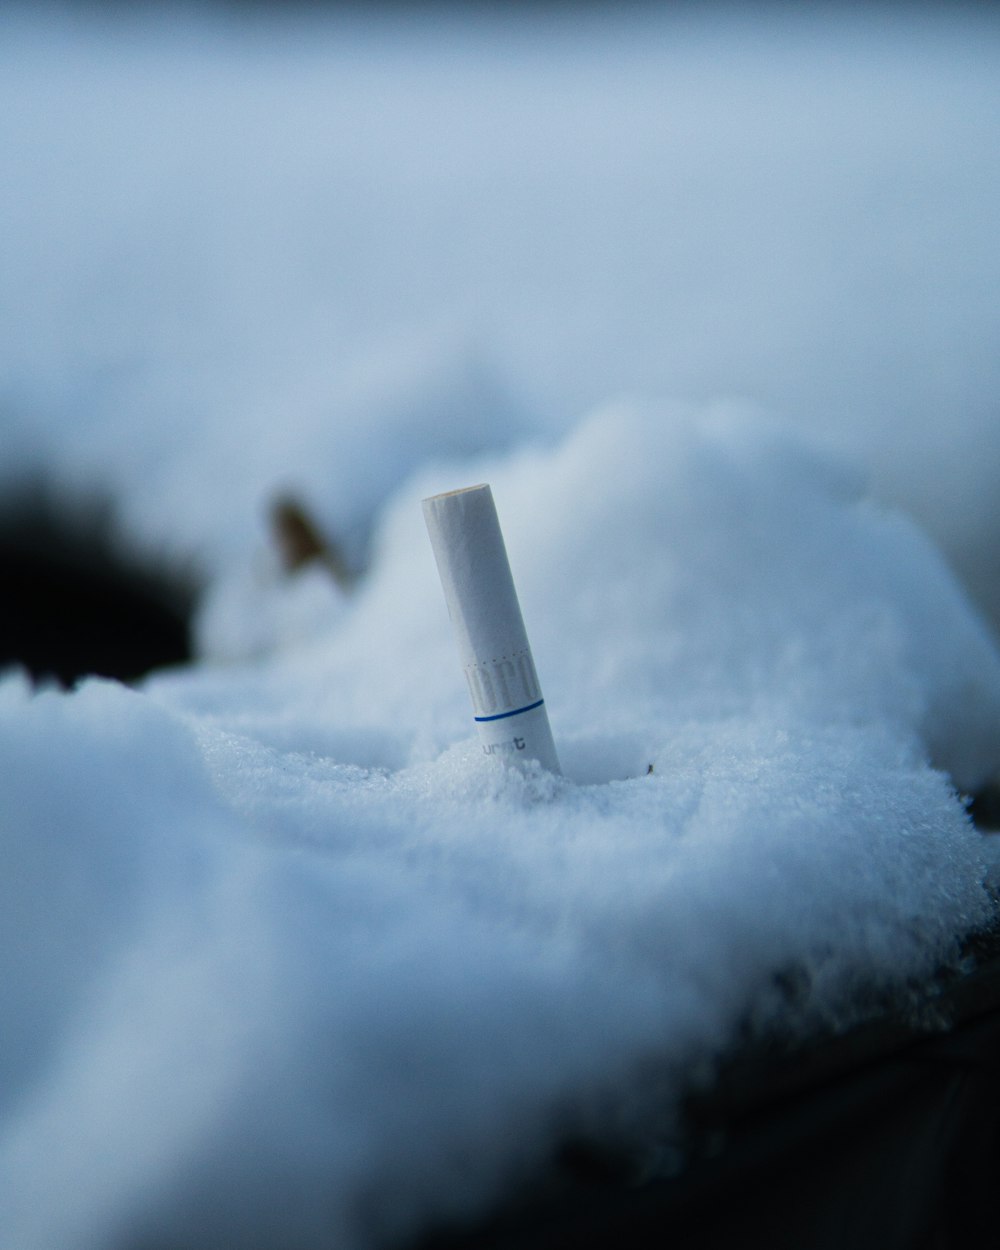 A cigarette in the snow